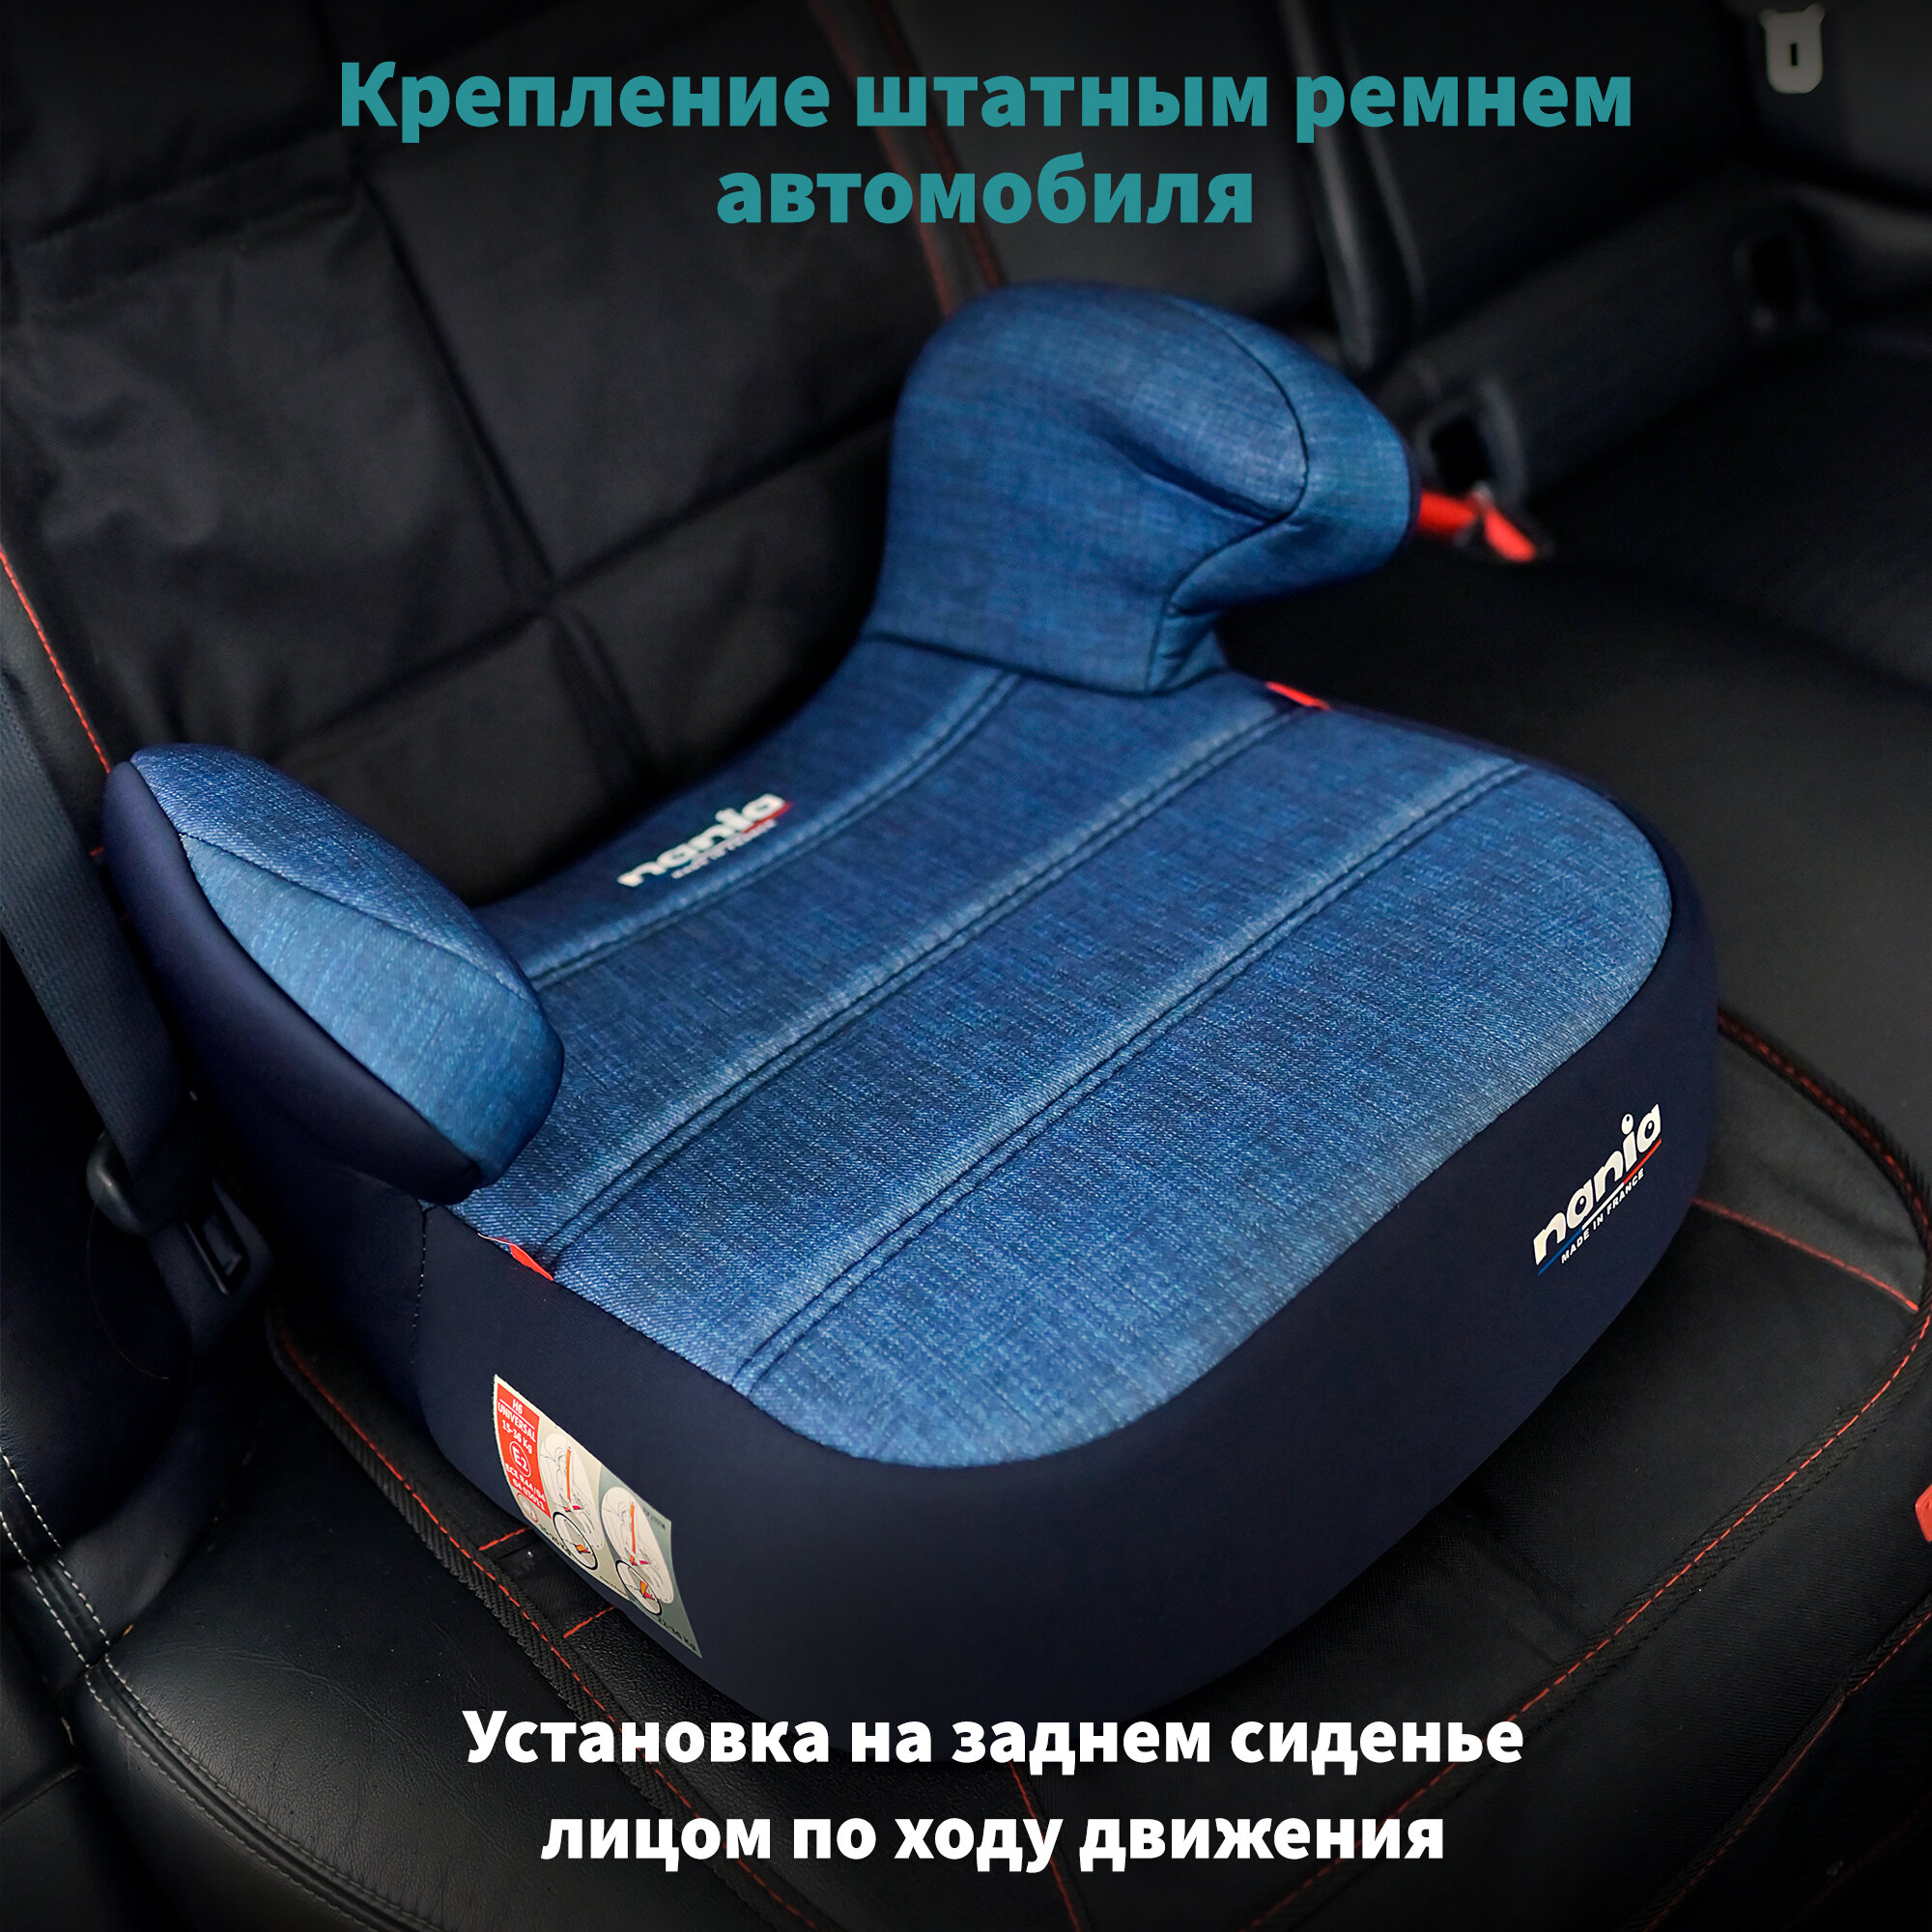 Детское автокресло - бустер автомобильный NANIA DREAM Denim Luxe Blue от 6 до 12 лет 15-36 кг группа 2/3 синий